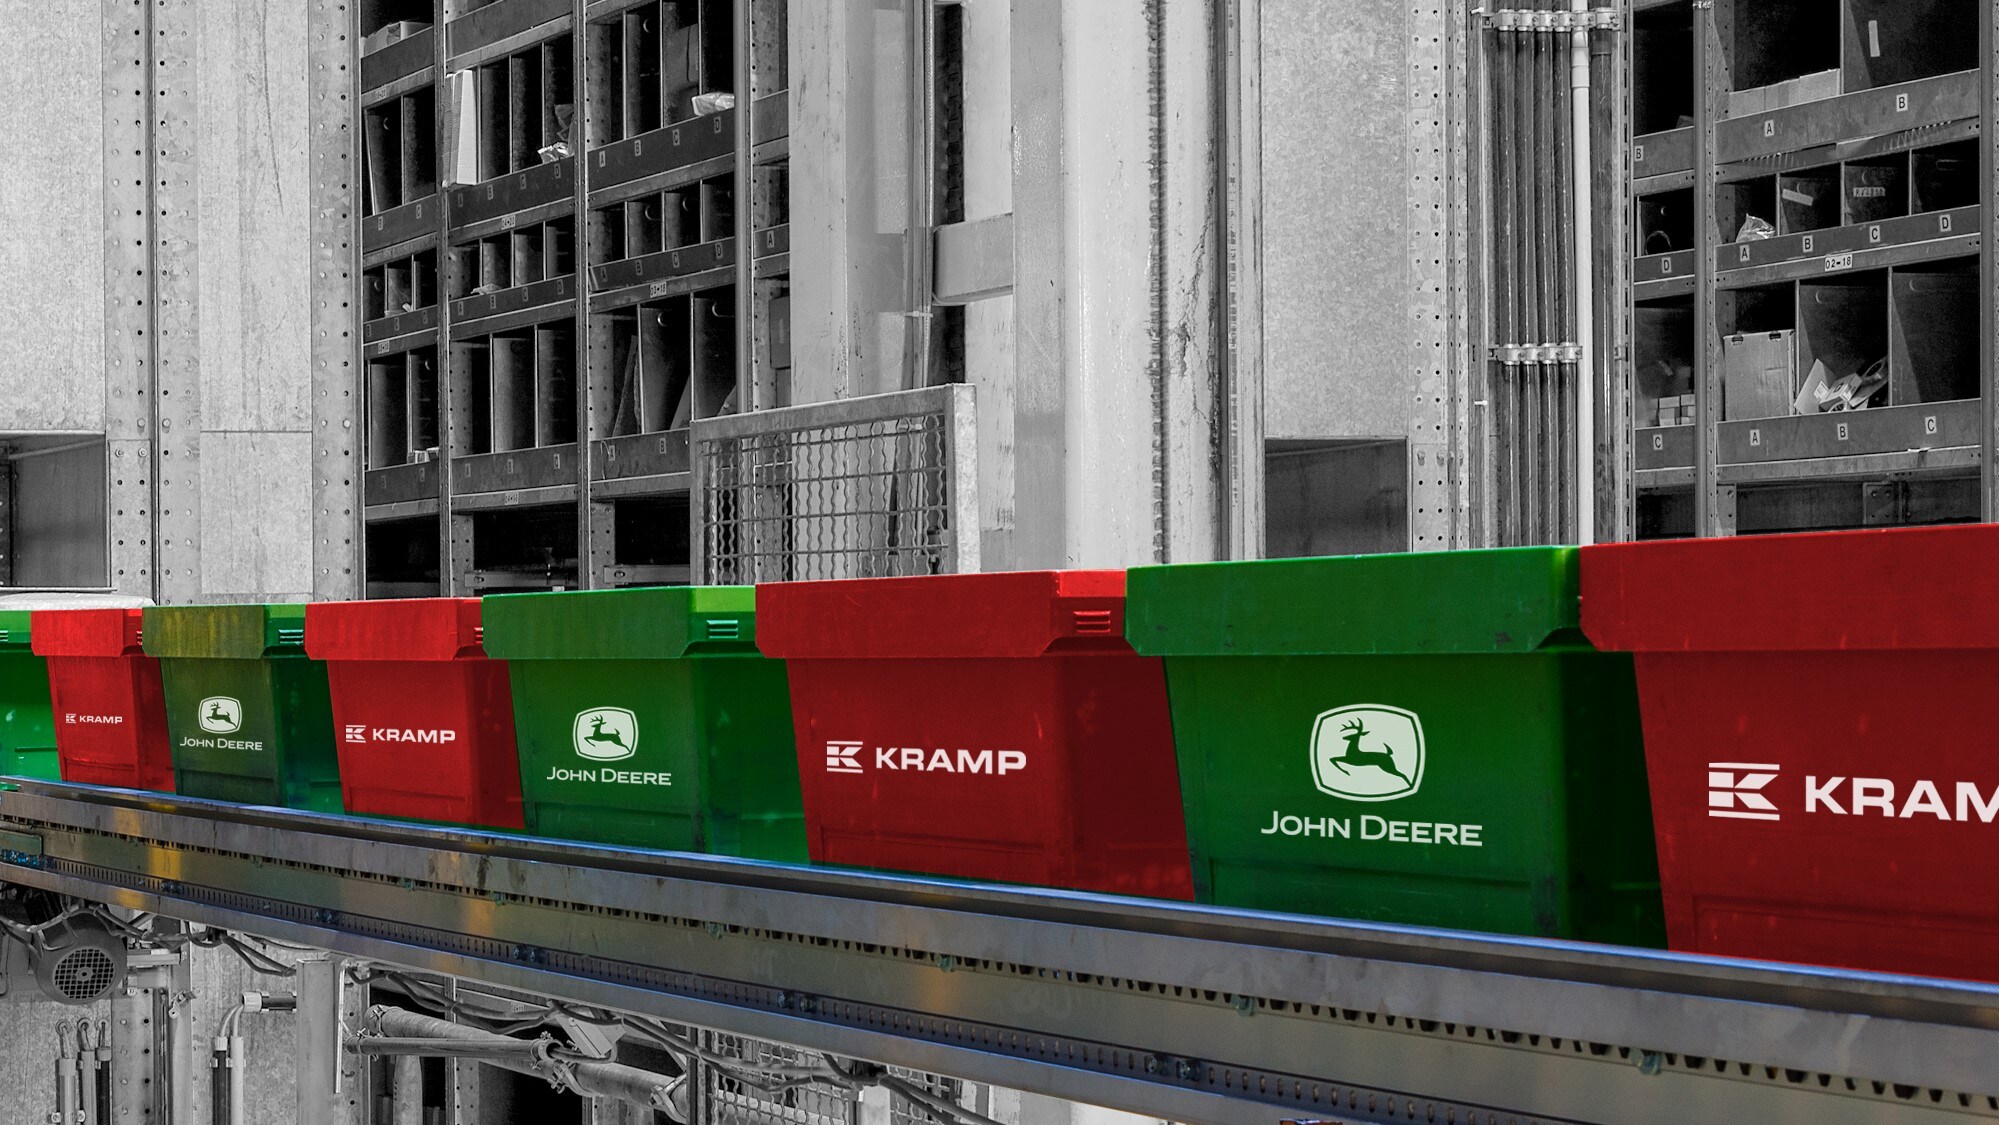 John Deere udvider sit partnerskab med Kramp i Europa